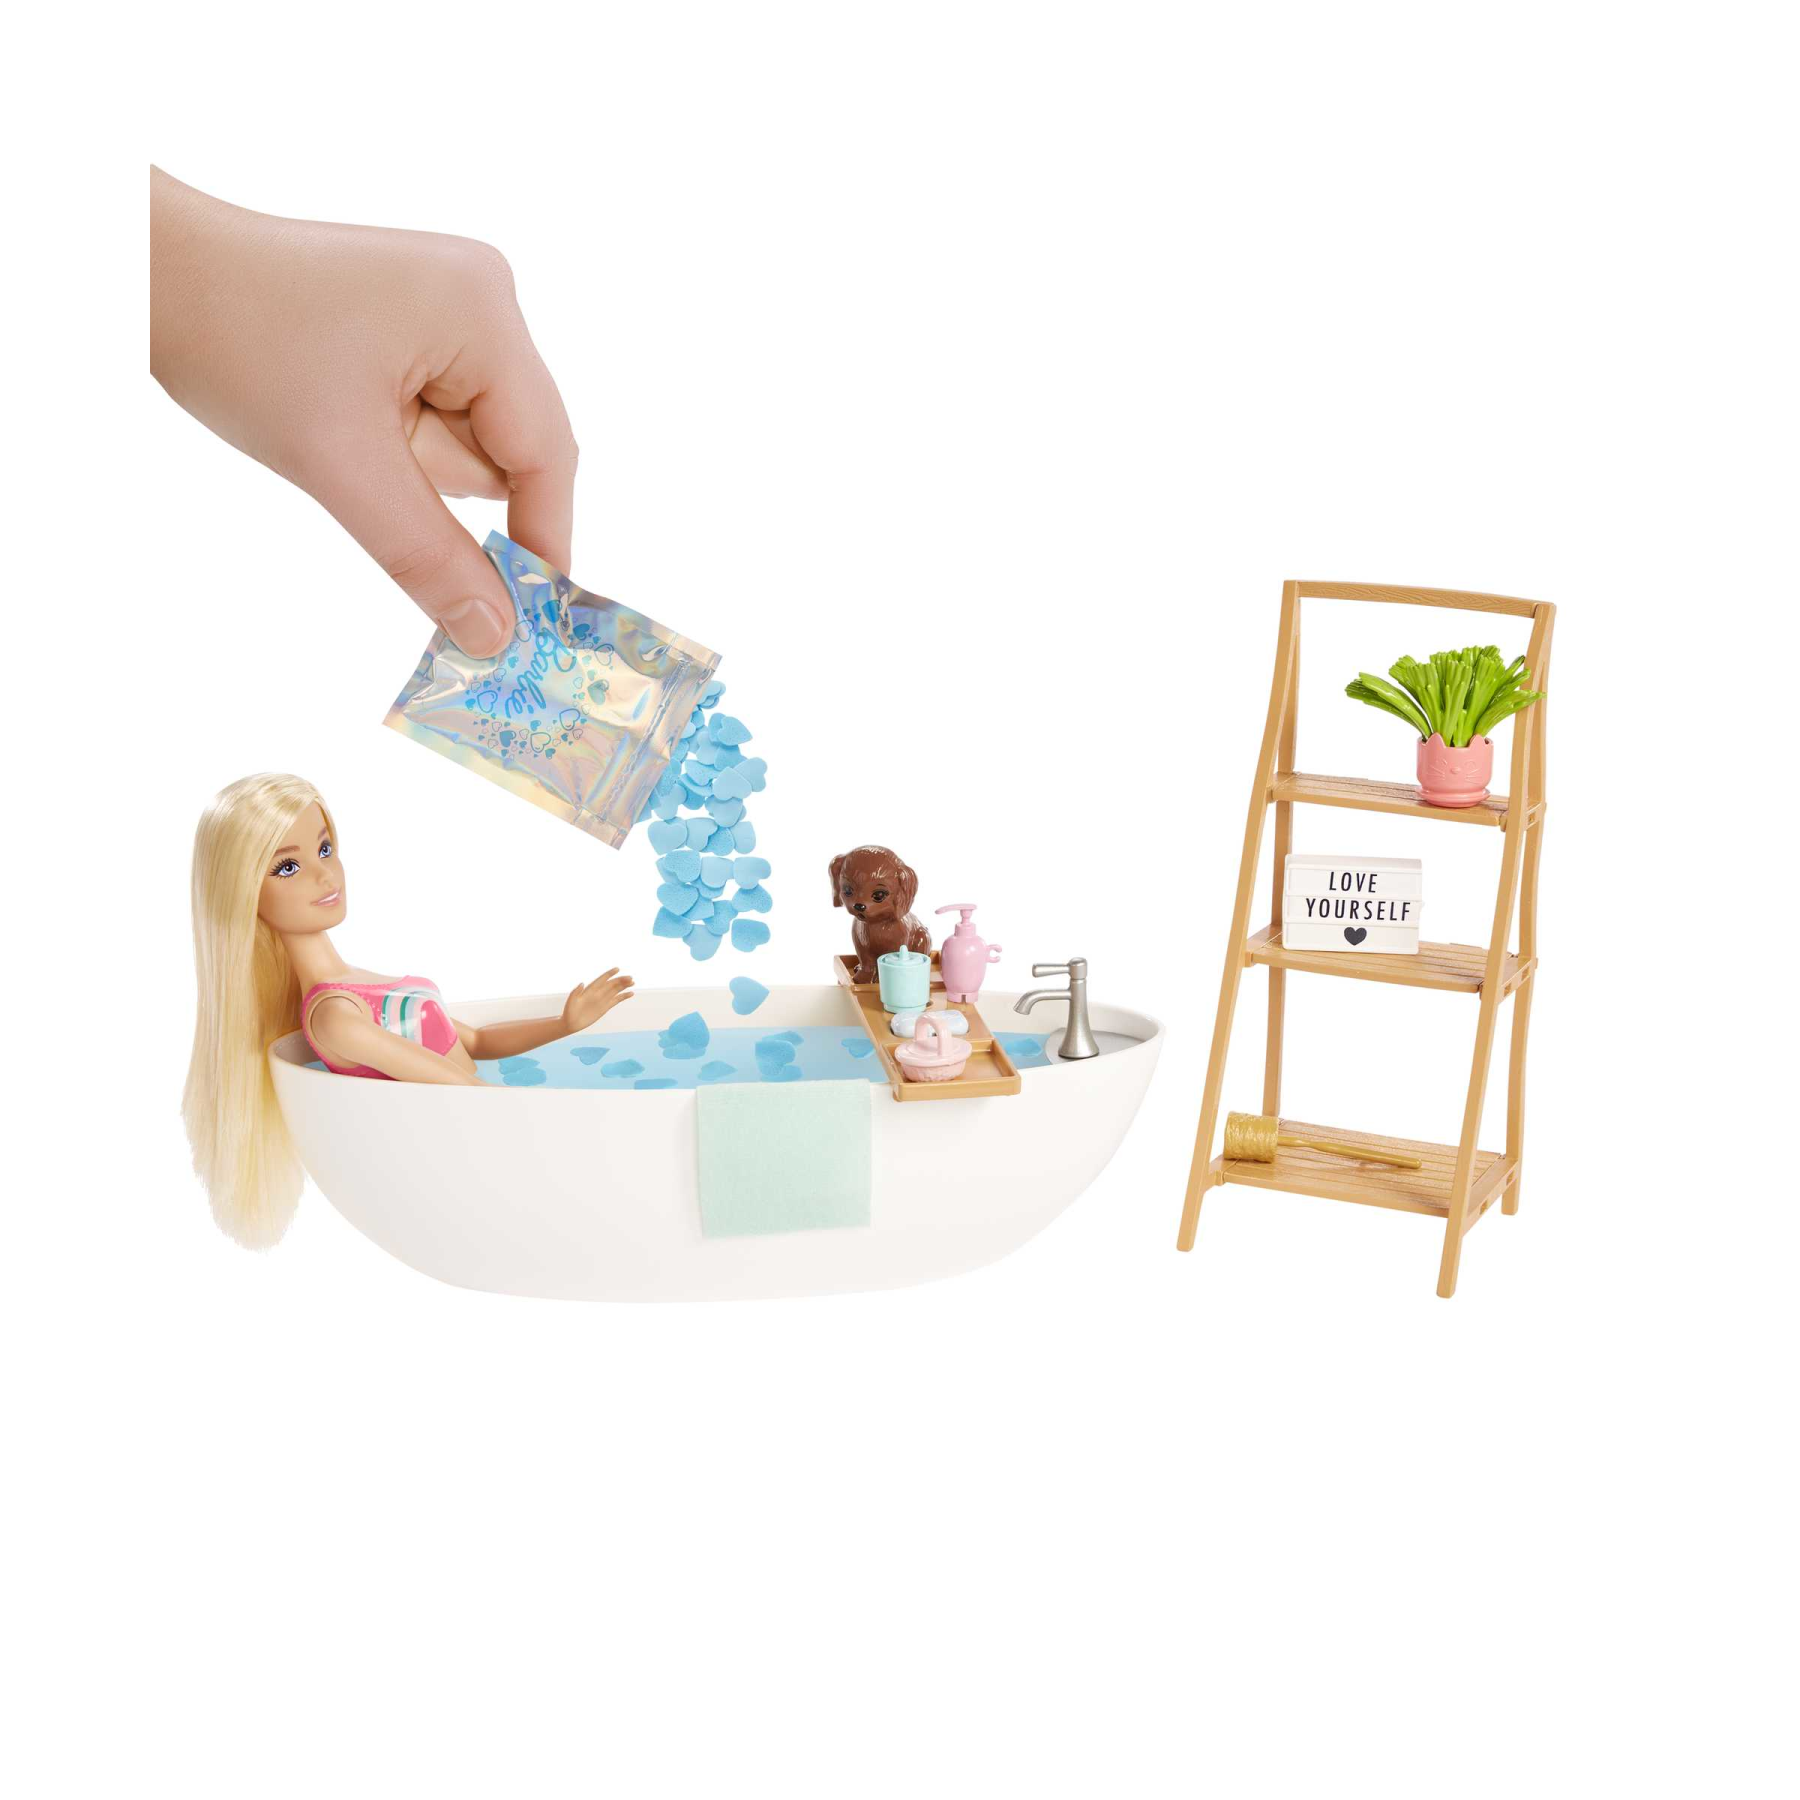 Barbie - vasca relax playset, con 1 bambola, 1 cucciolo, coriandoli di sapone colorati e accessori, giocattolo per bambini, 3+ anni, hkt92 - Barbie